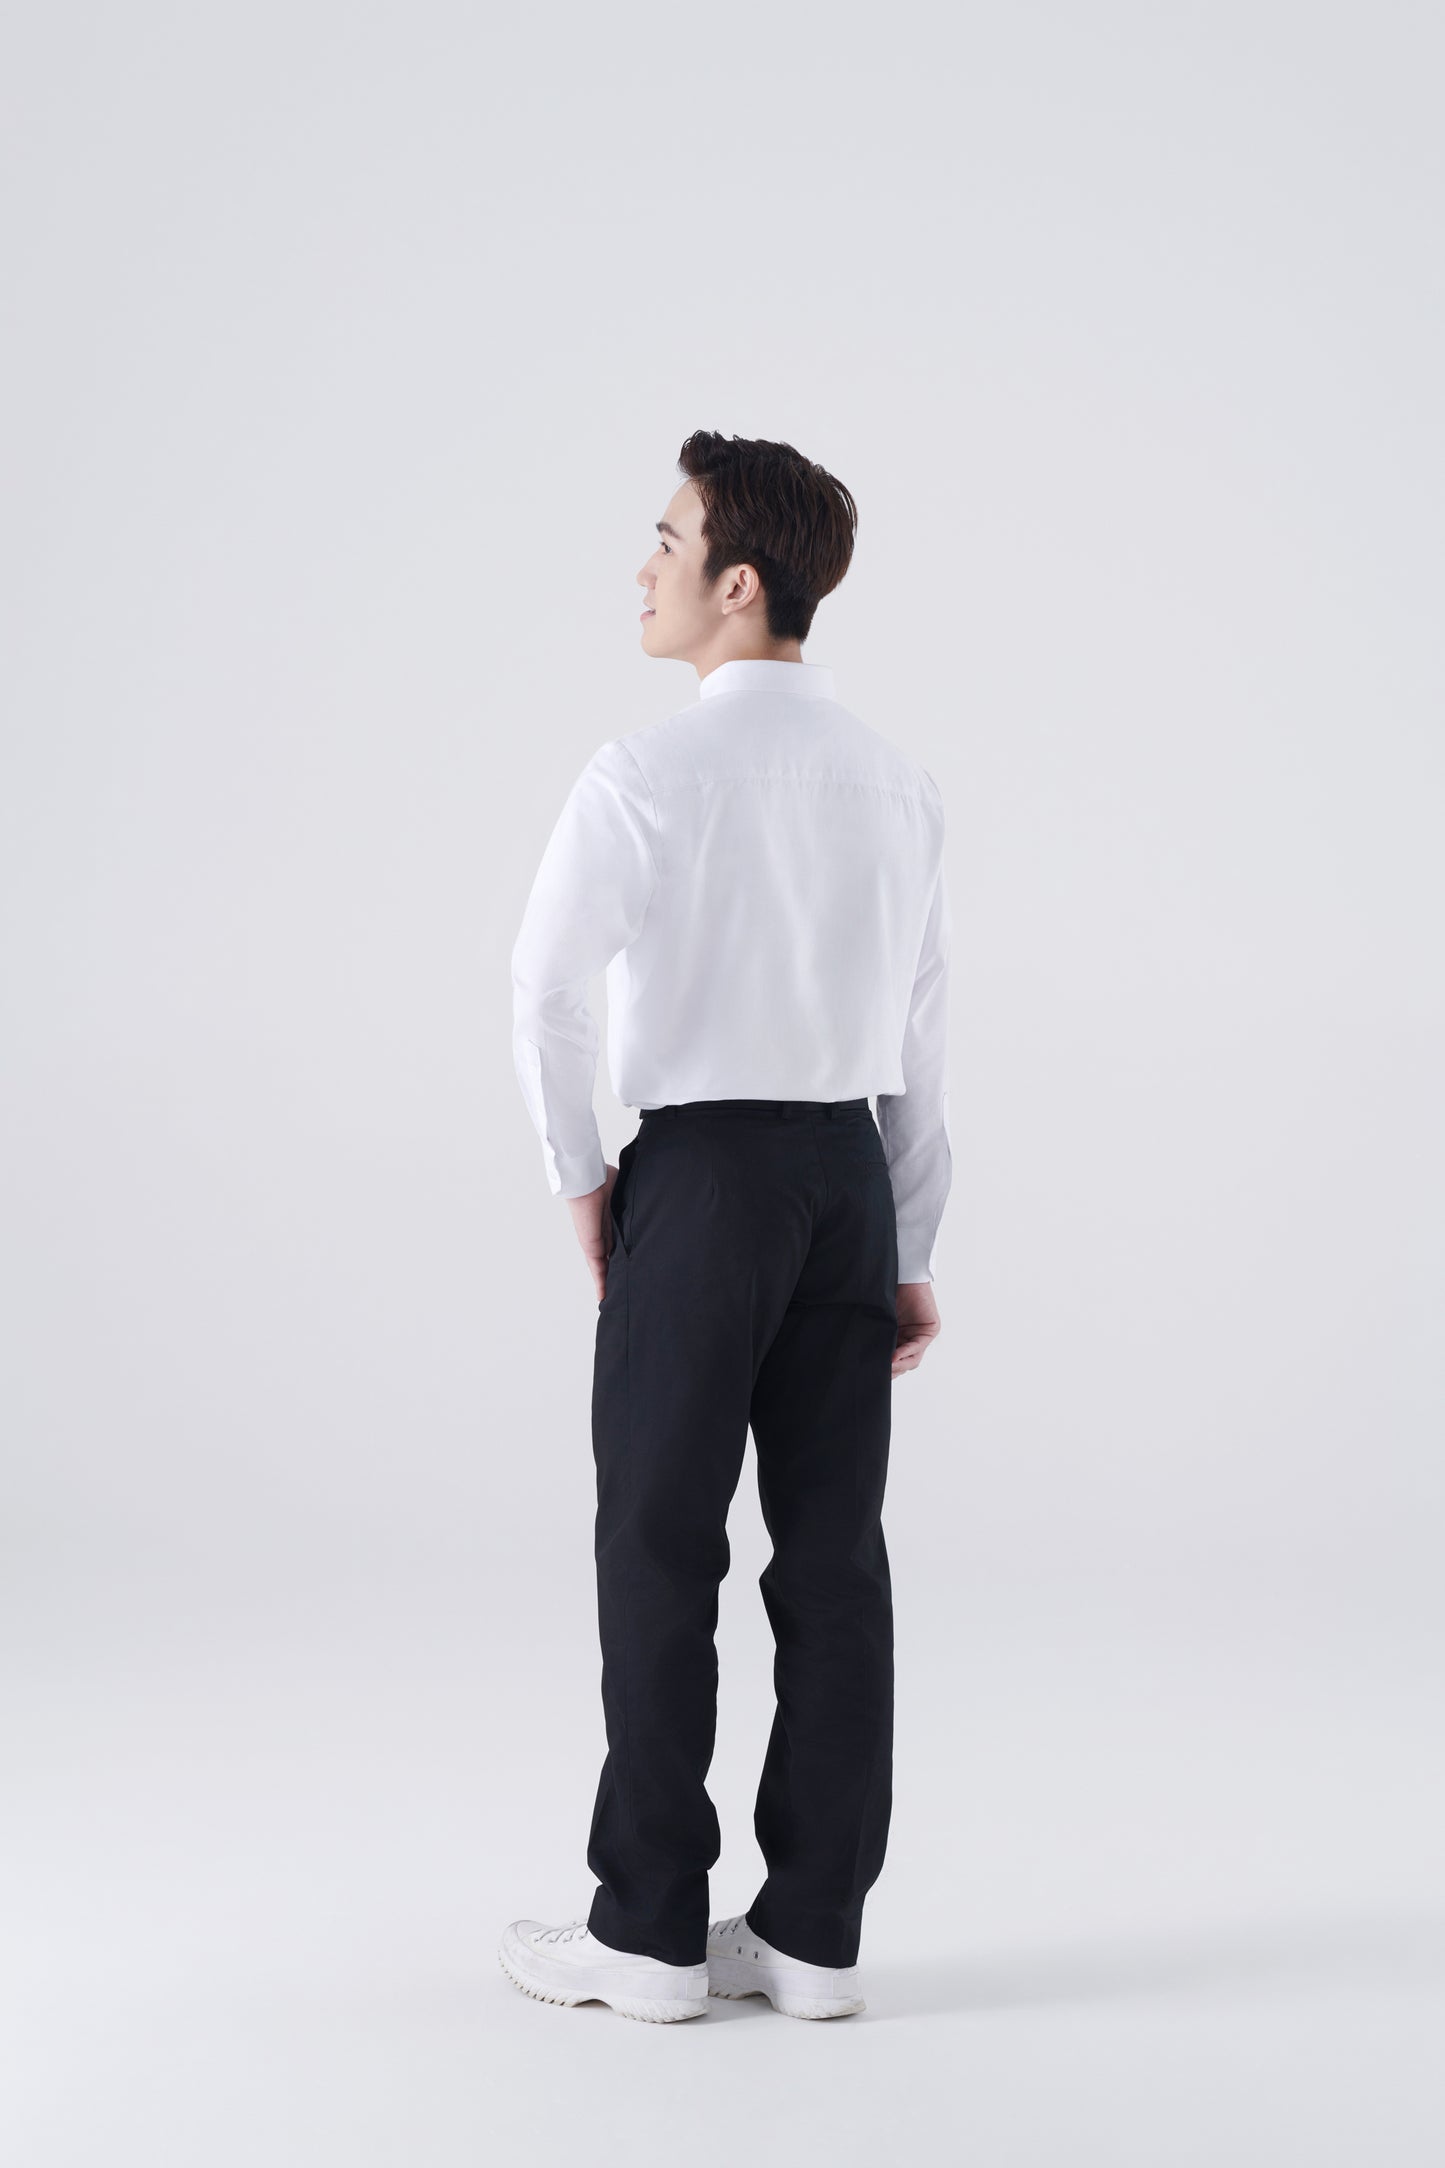 Skyler White Shirt, Long Sleeve